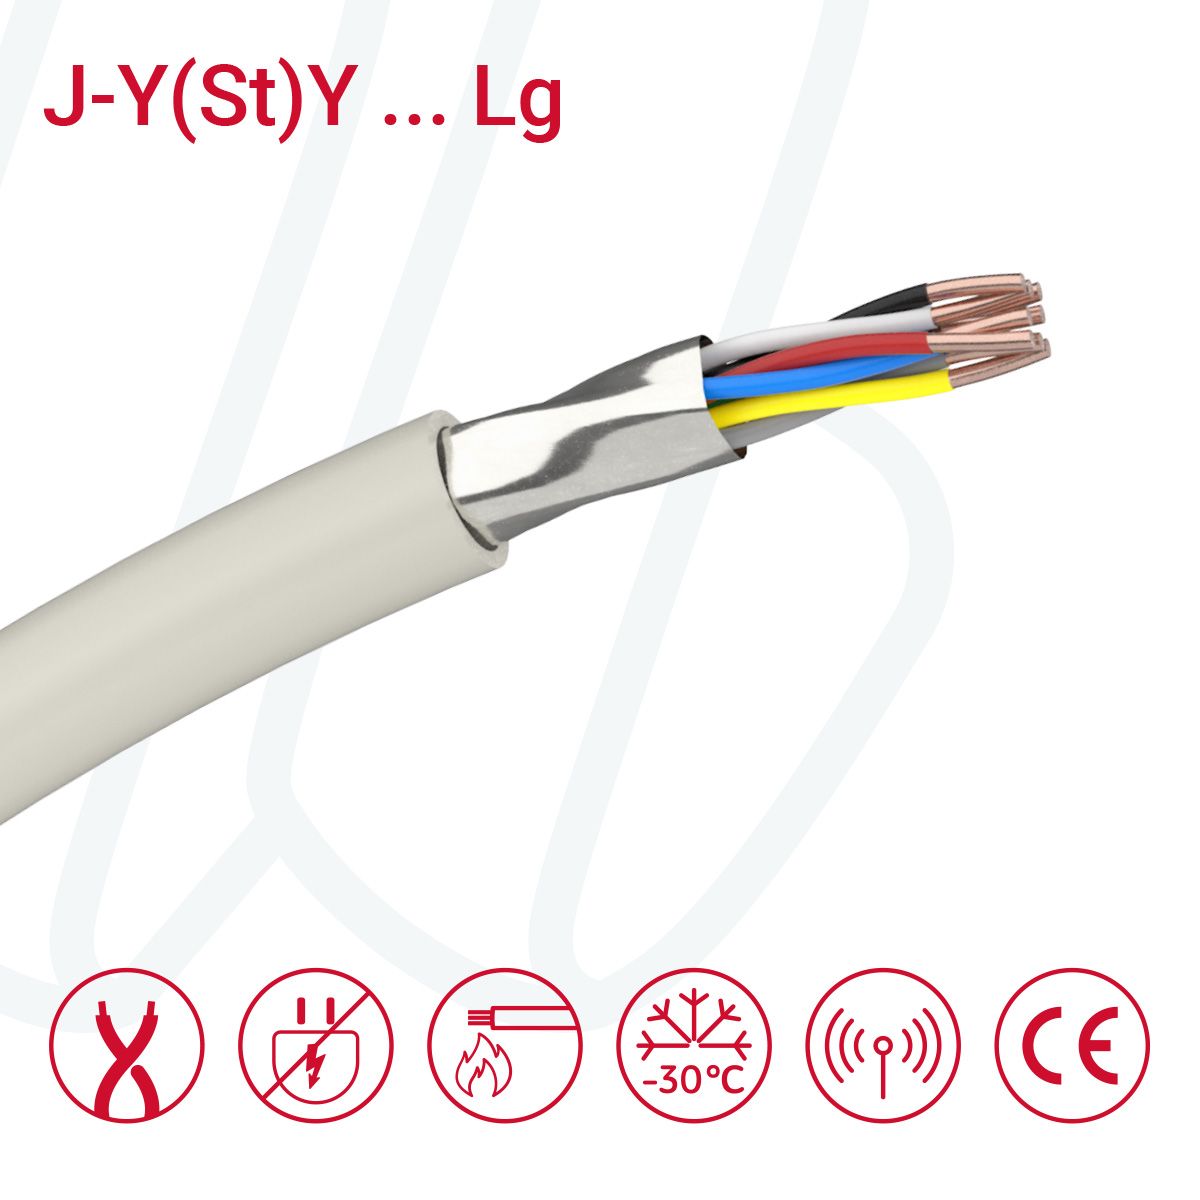 Кабель J-Y(St)Y…LG 04X2X0.6 (0.28мм²) сірий, 08, 0.28